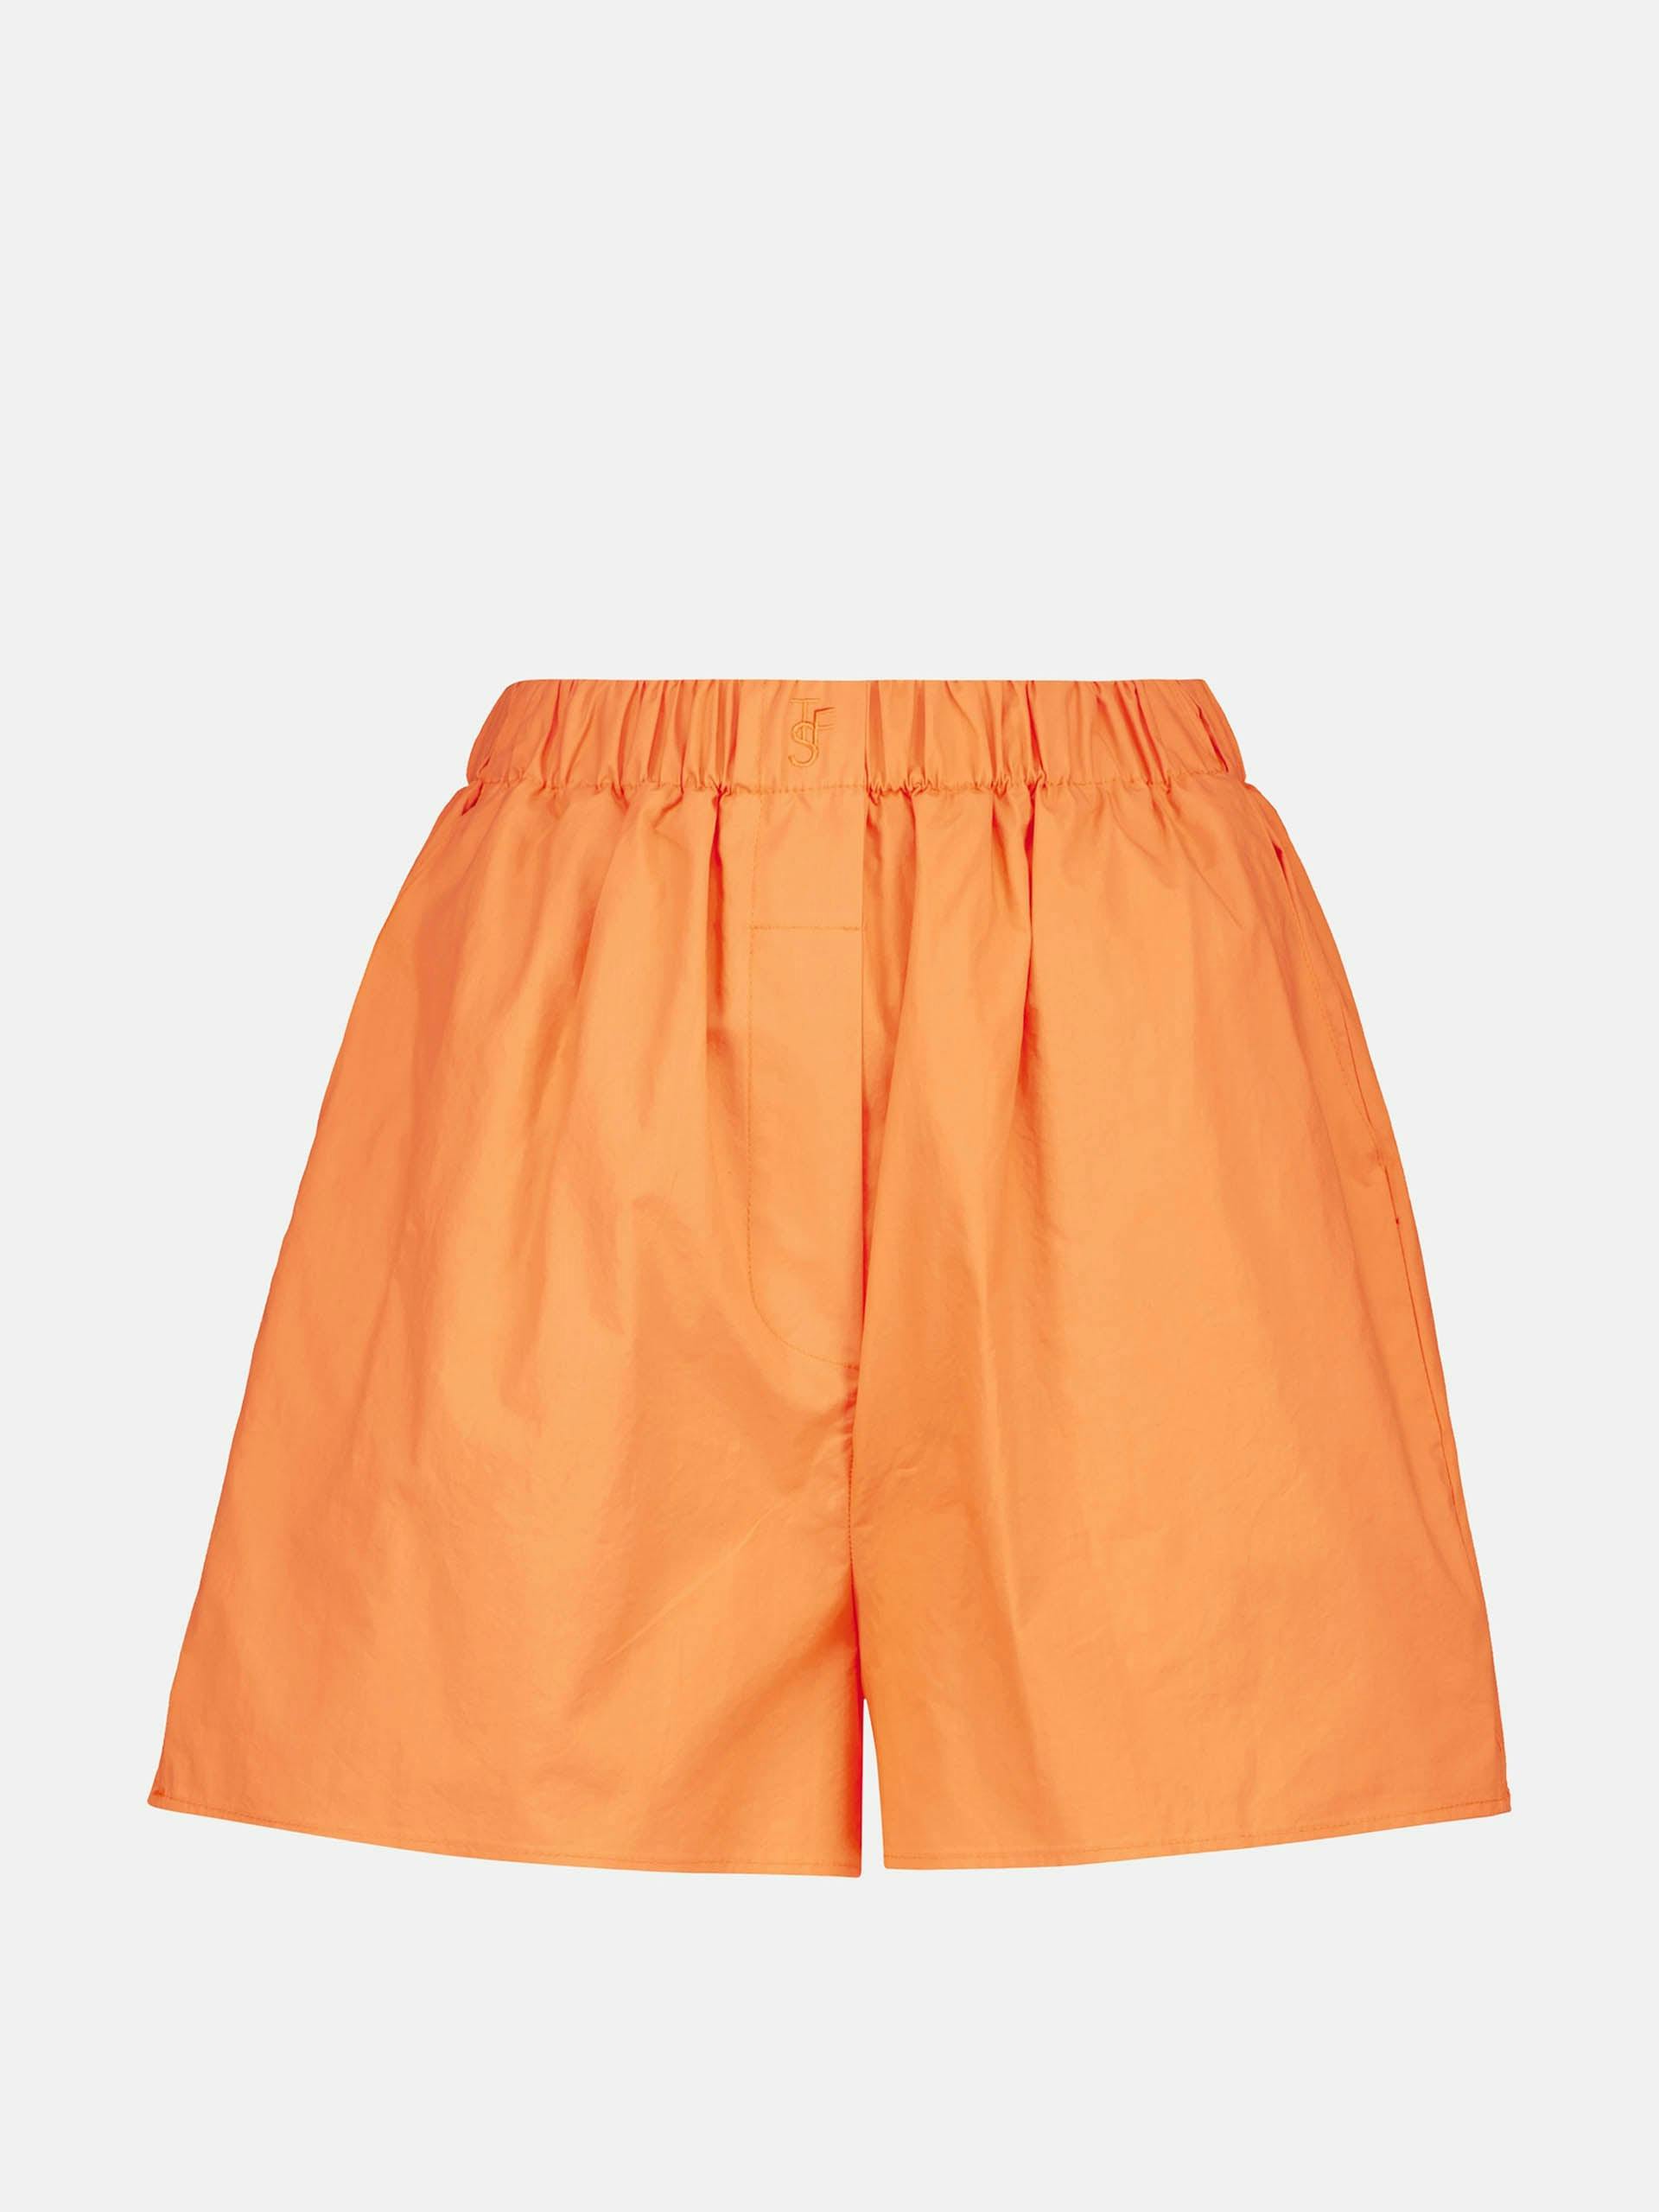 Orange cotton shorts